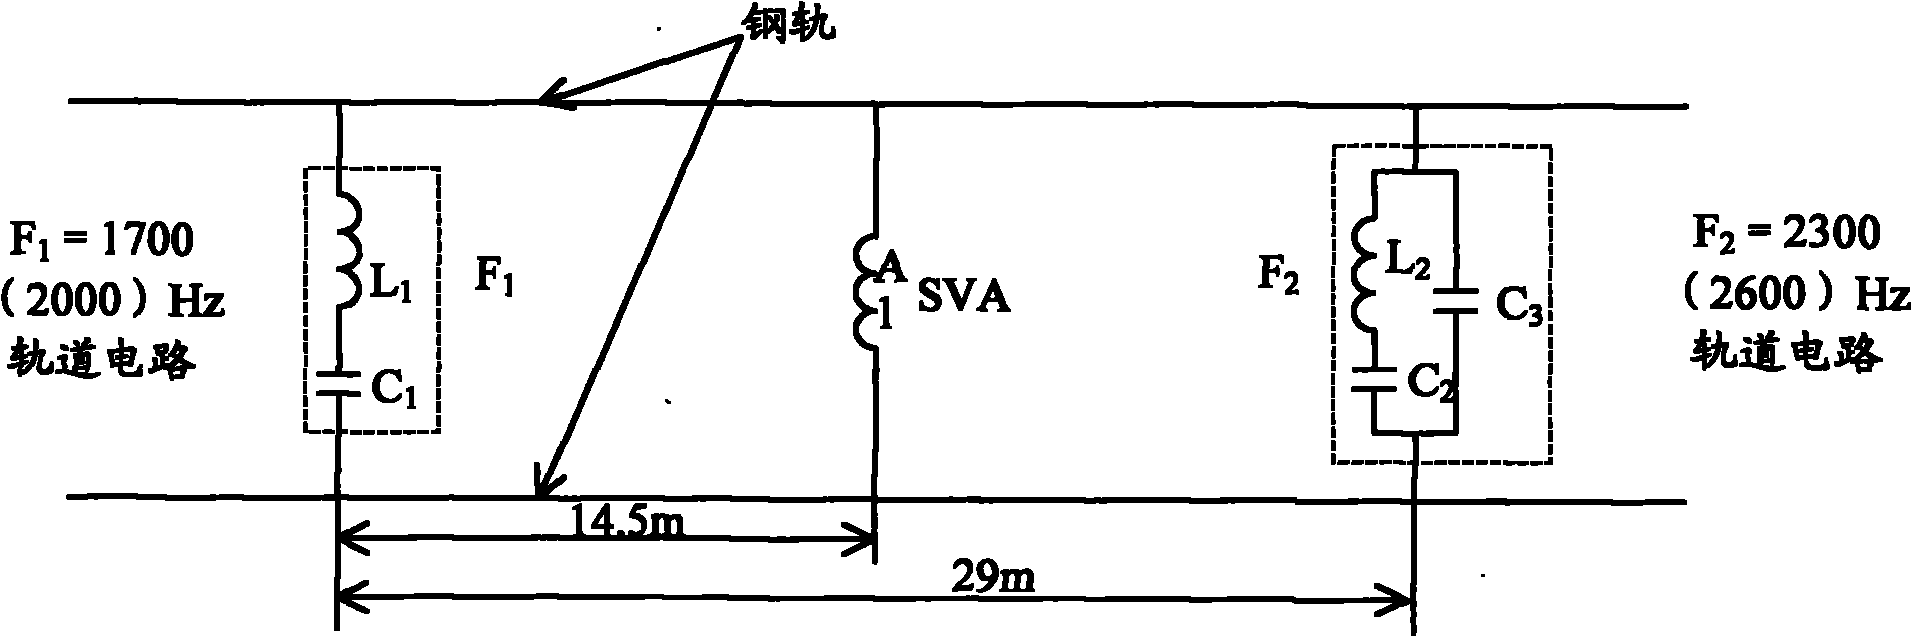 Non-insulation track circuit